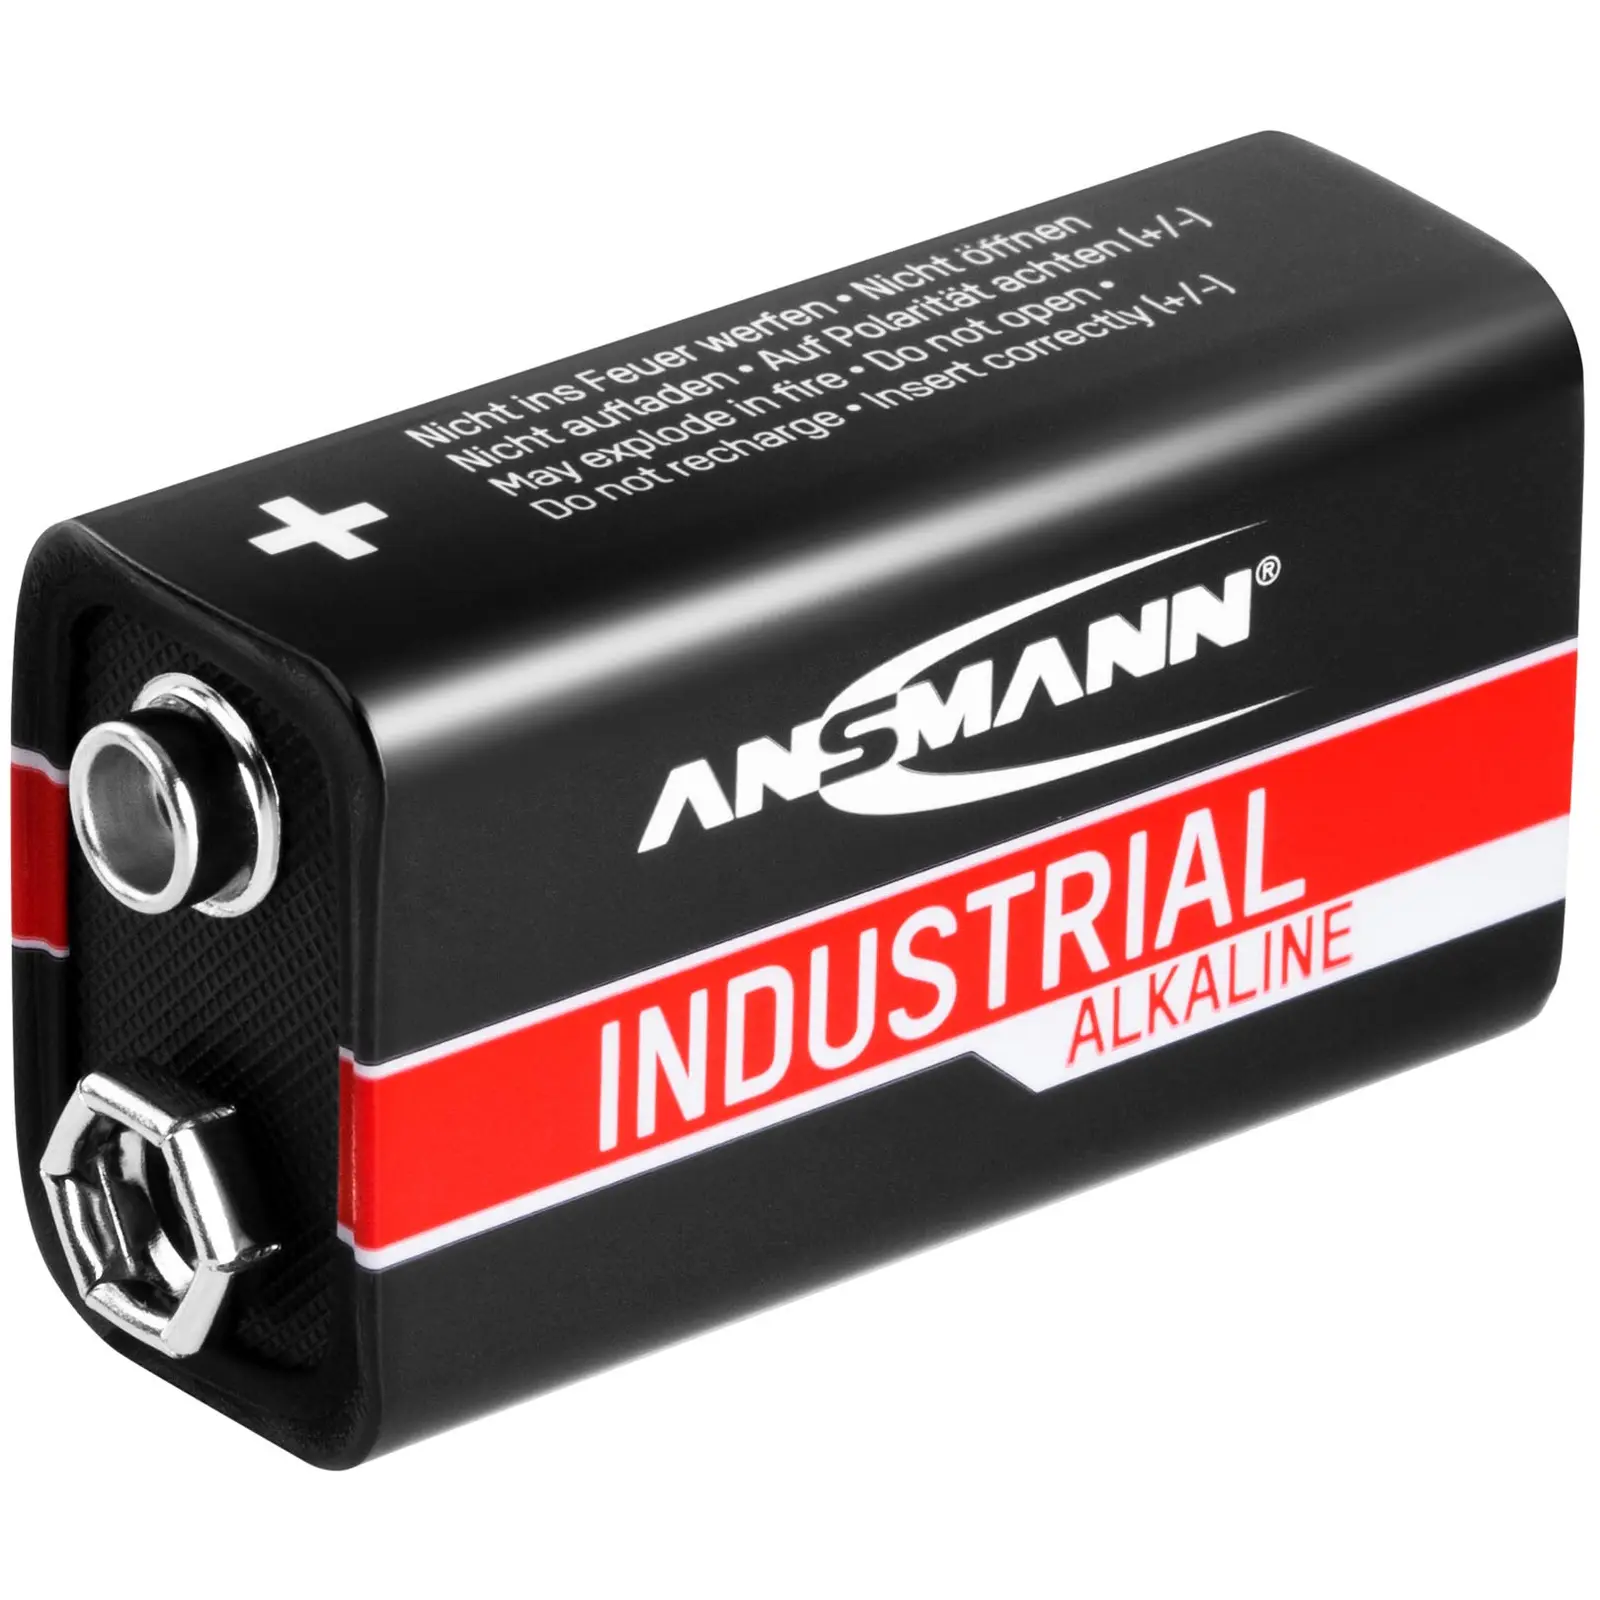 50 batterie alcaline 6LR61 transistor - Set risparmio Ansmann INDUSTRIAL - 9 V